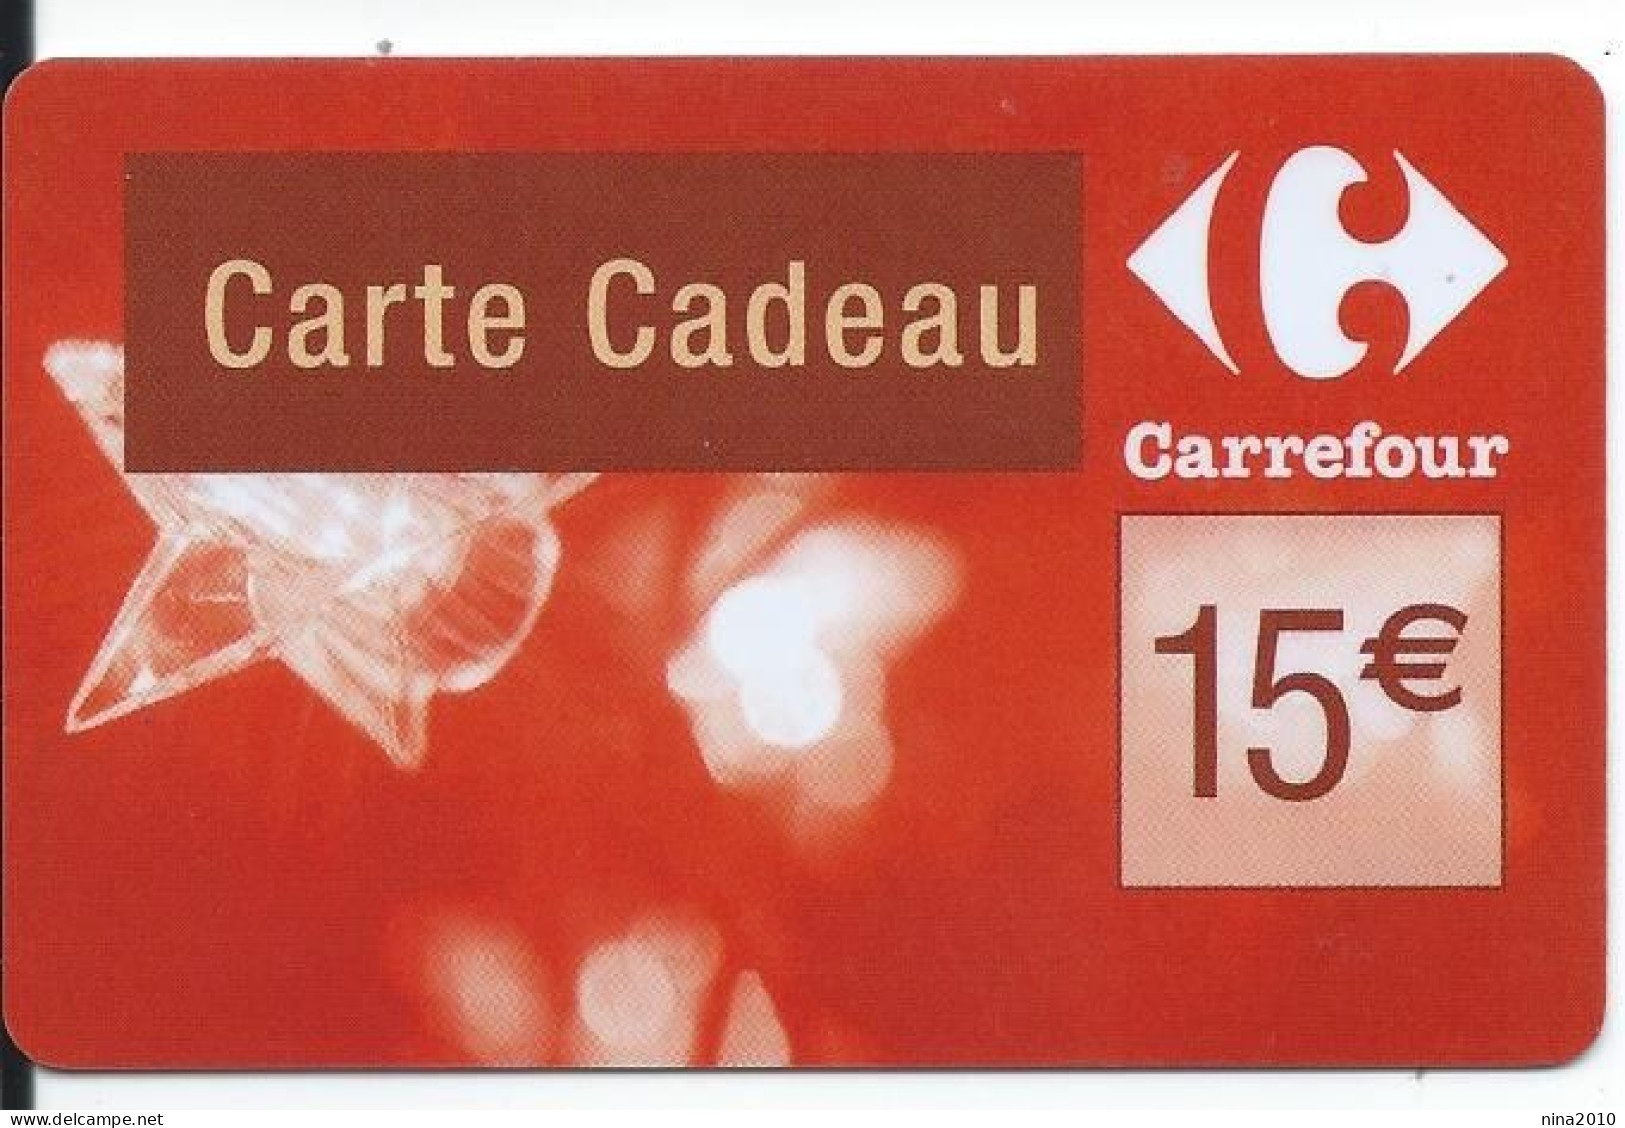 Carte Cadeau - Carrefour Verso 31/12/2009  - VOIR DESCRIPTION Avant Enchères -  GIFT CARD /GESCHENKKARTE - Cartes Cadeaux